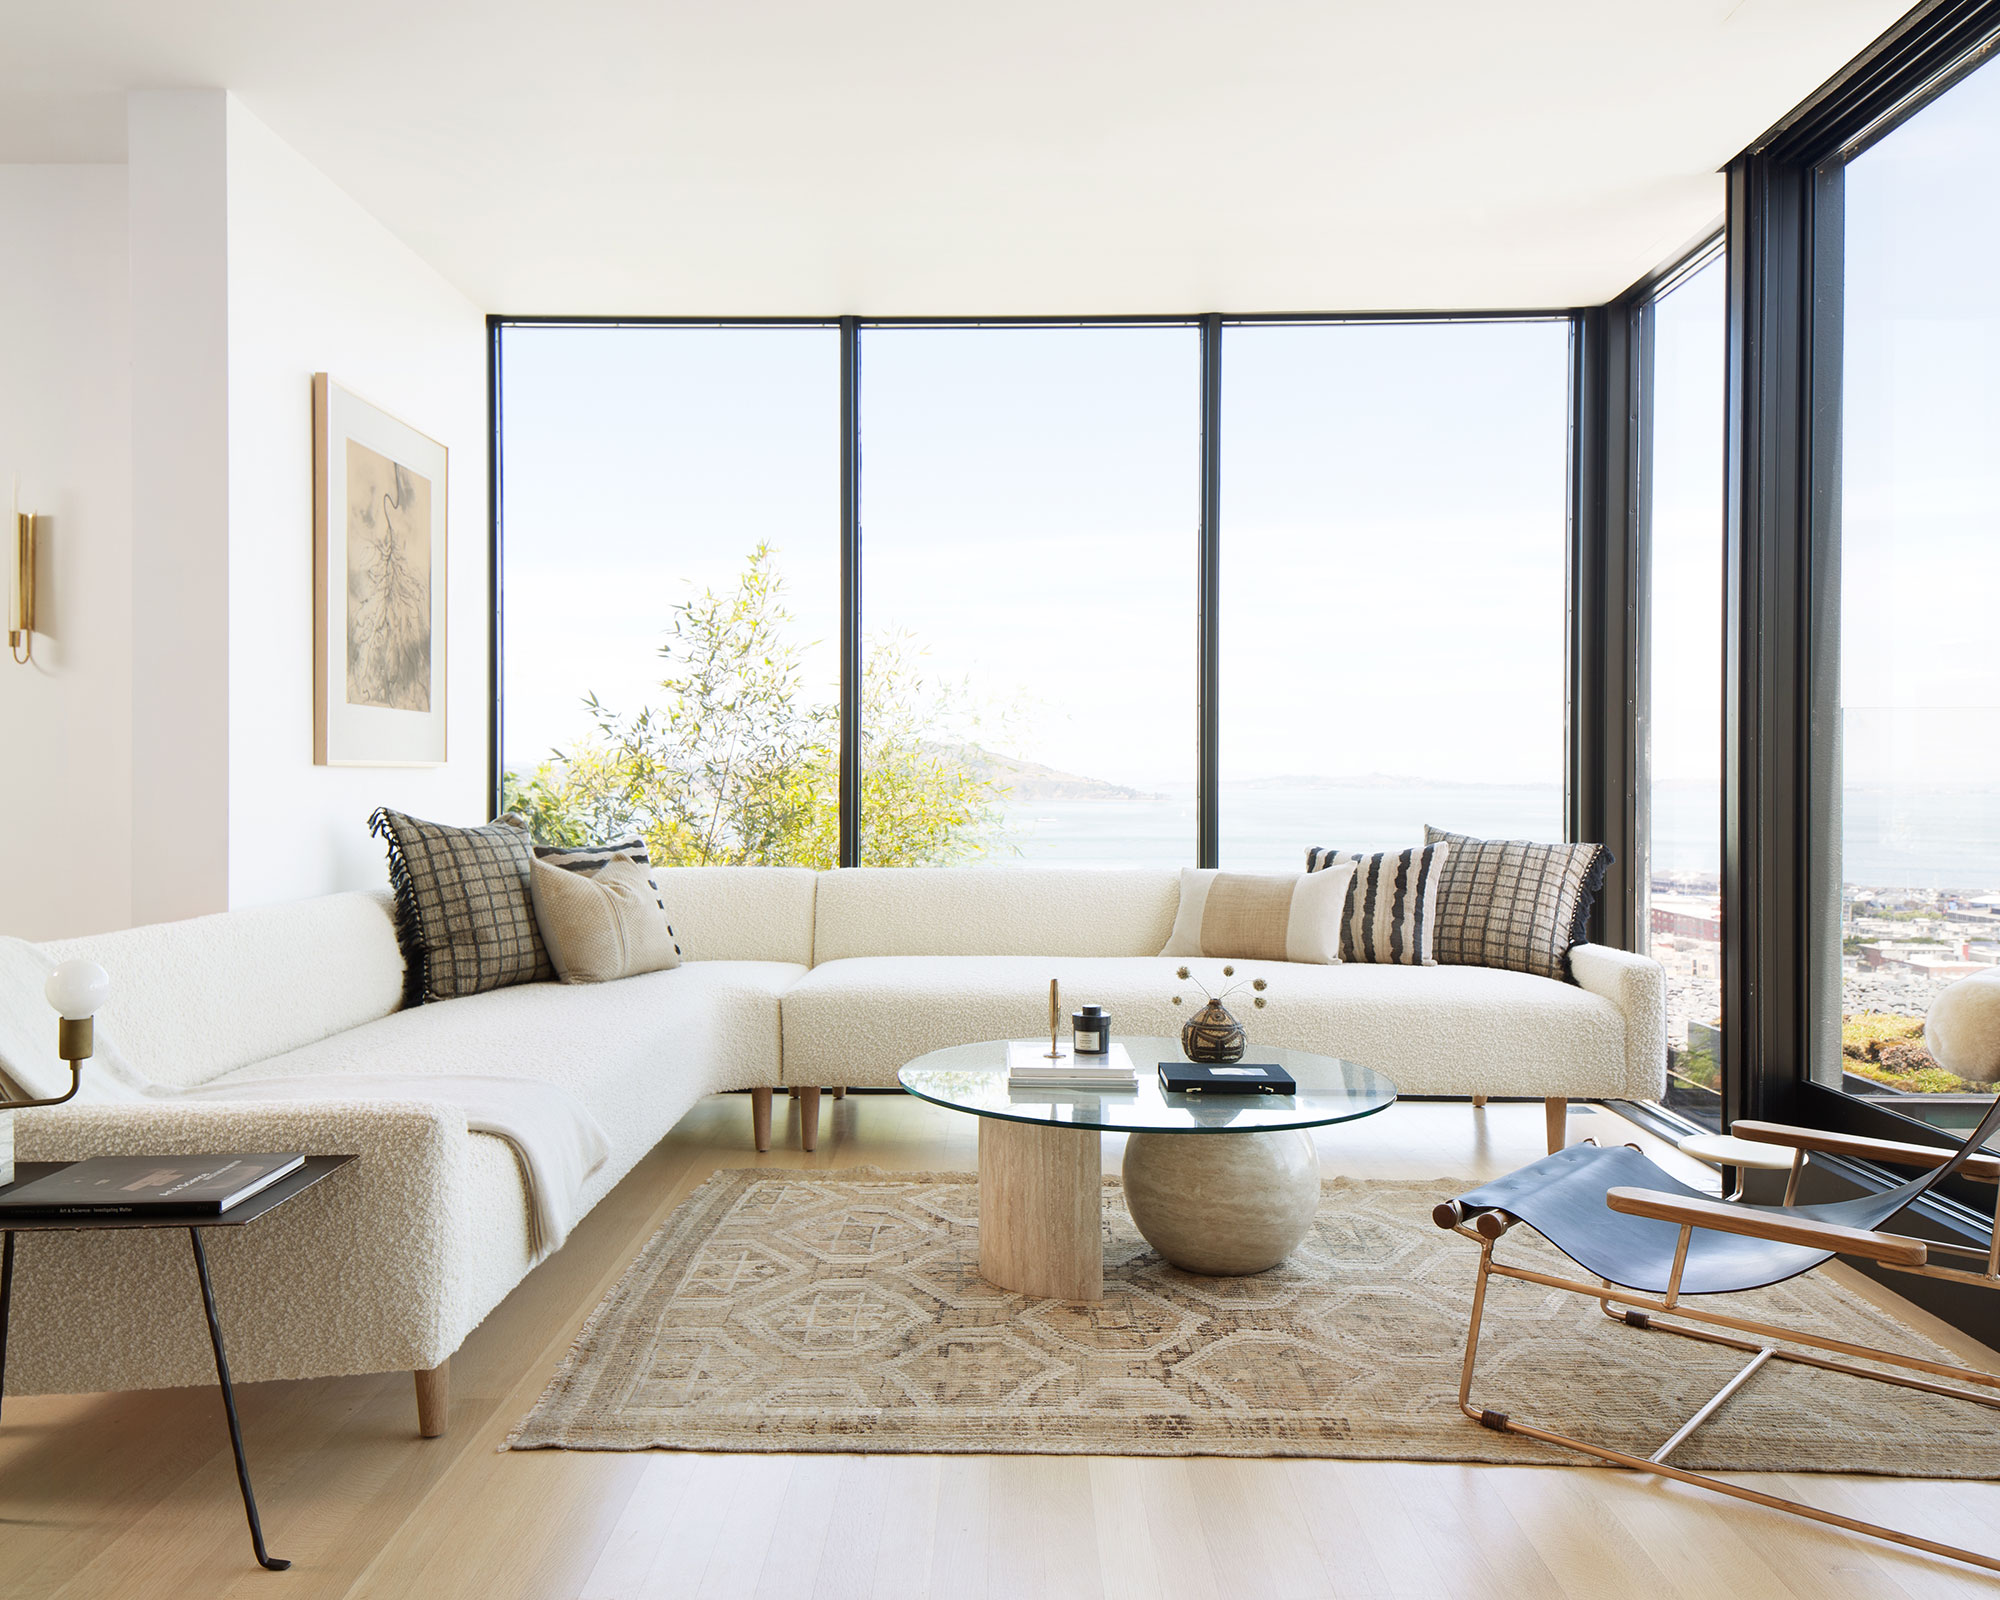 Minimalist living room ideas: 4 inspiring pared-back looks